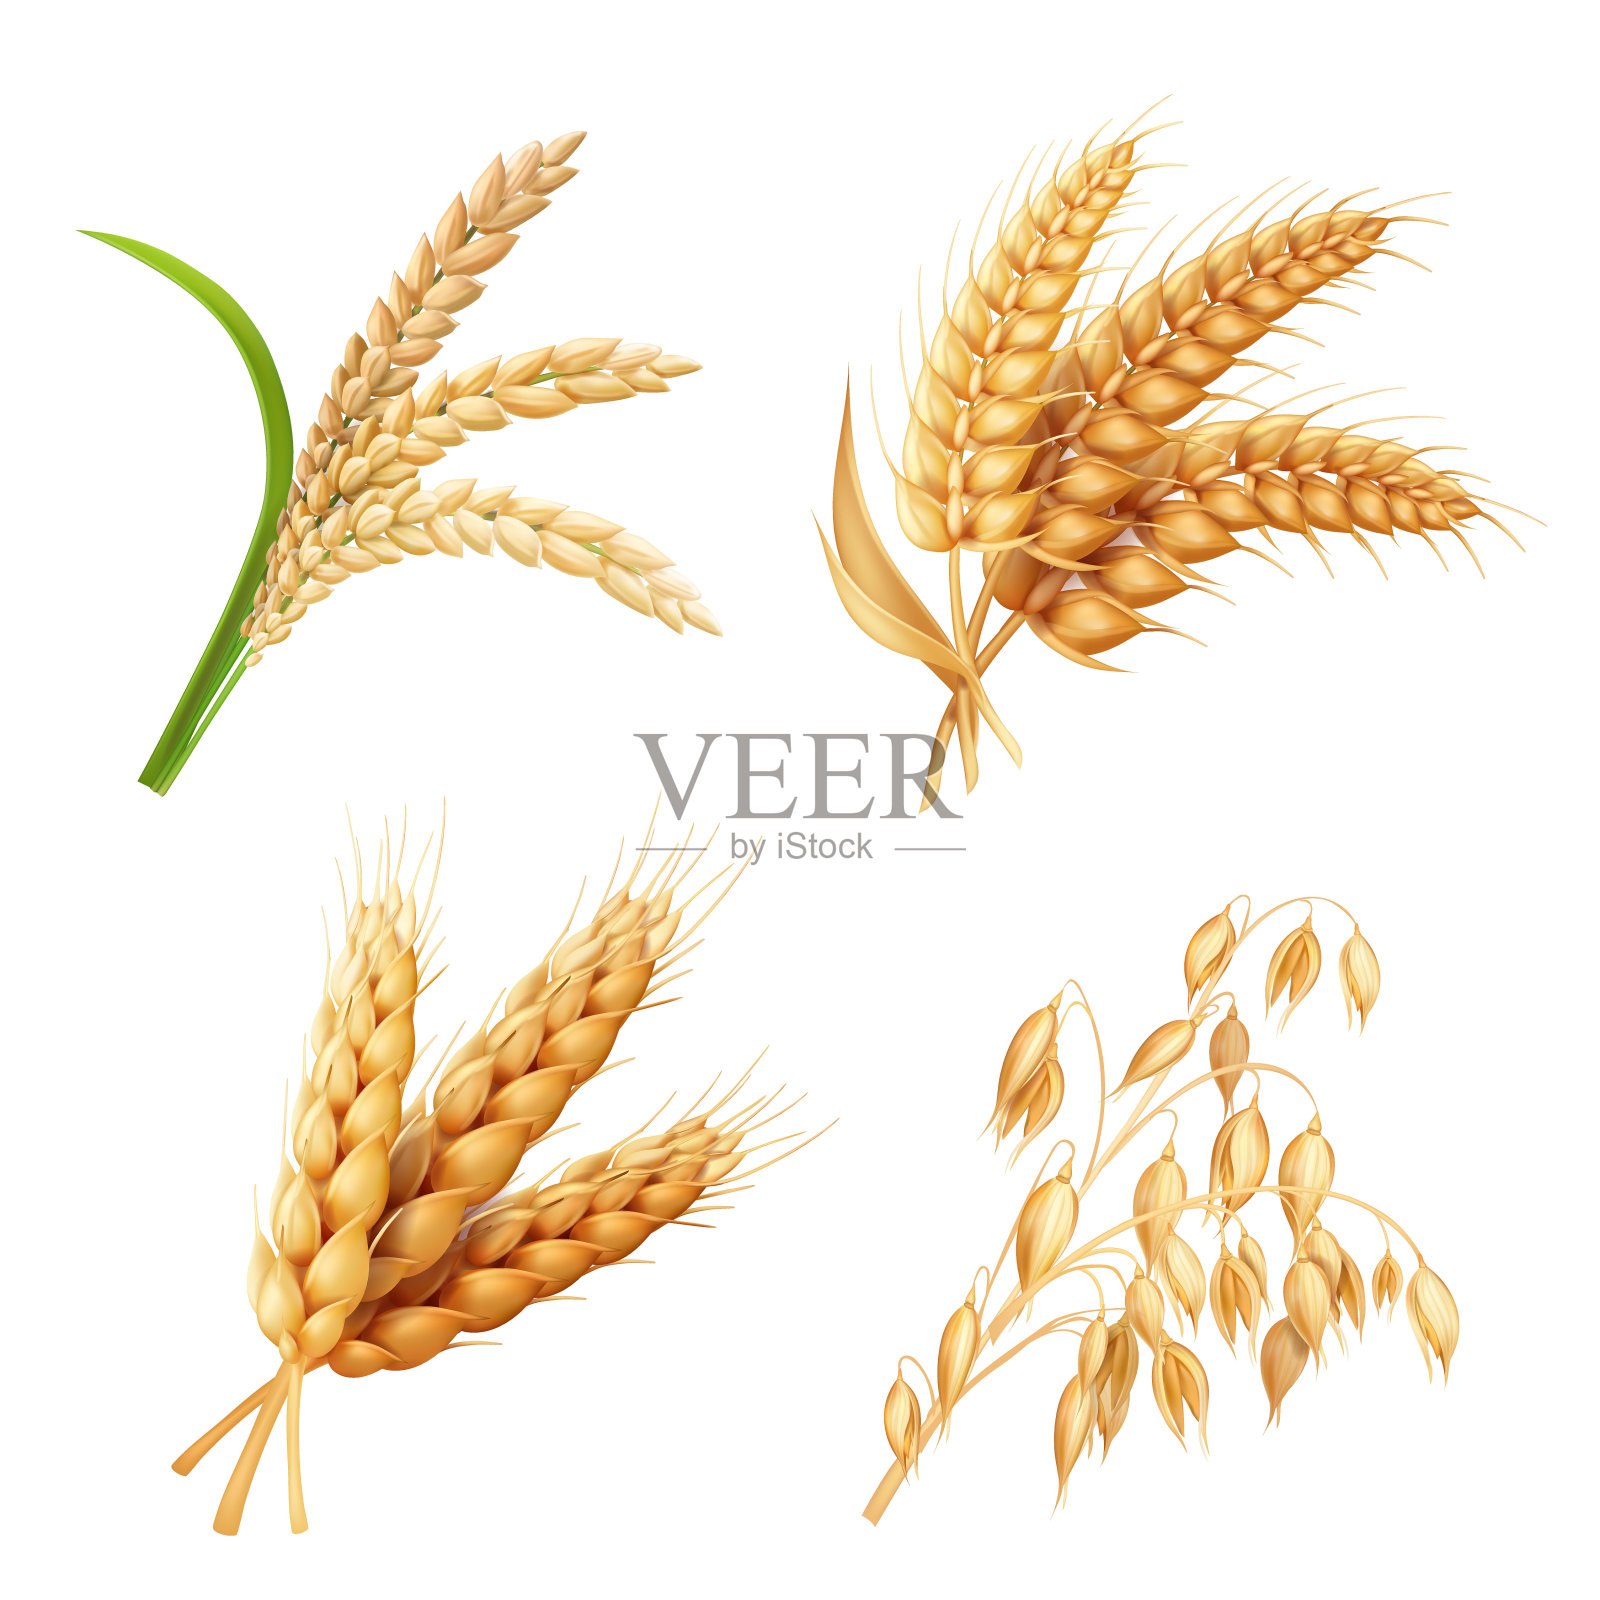 农作物设置水稻、燕麦、小麦、大麦矢量写实插画设计模板素材